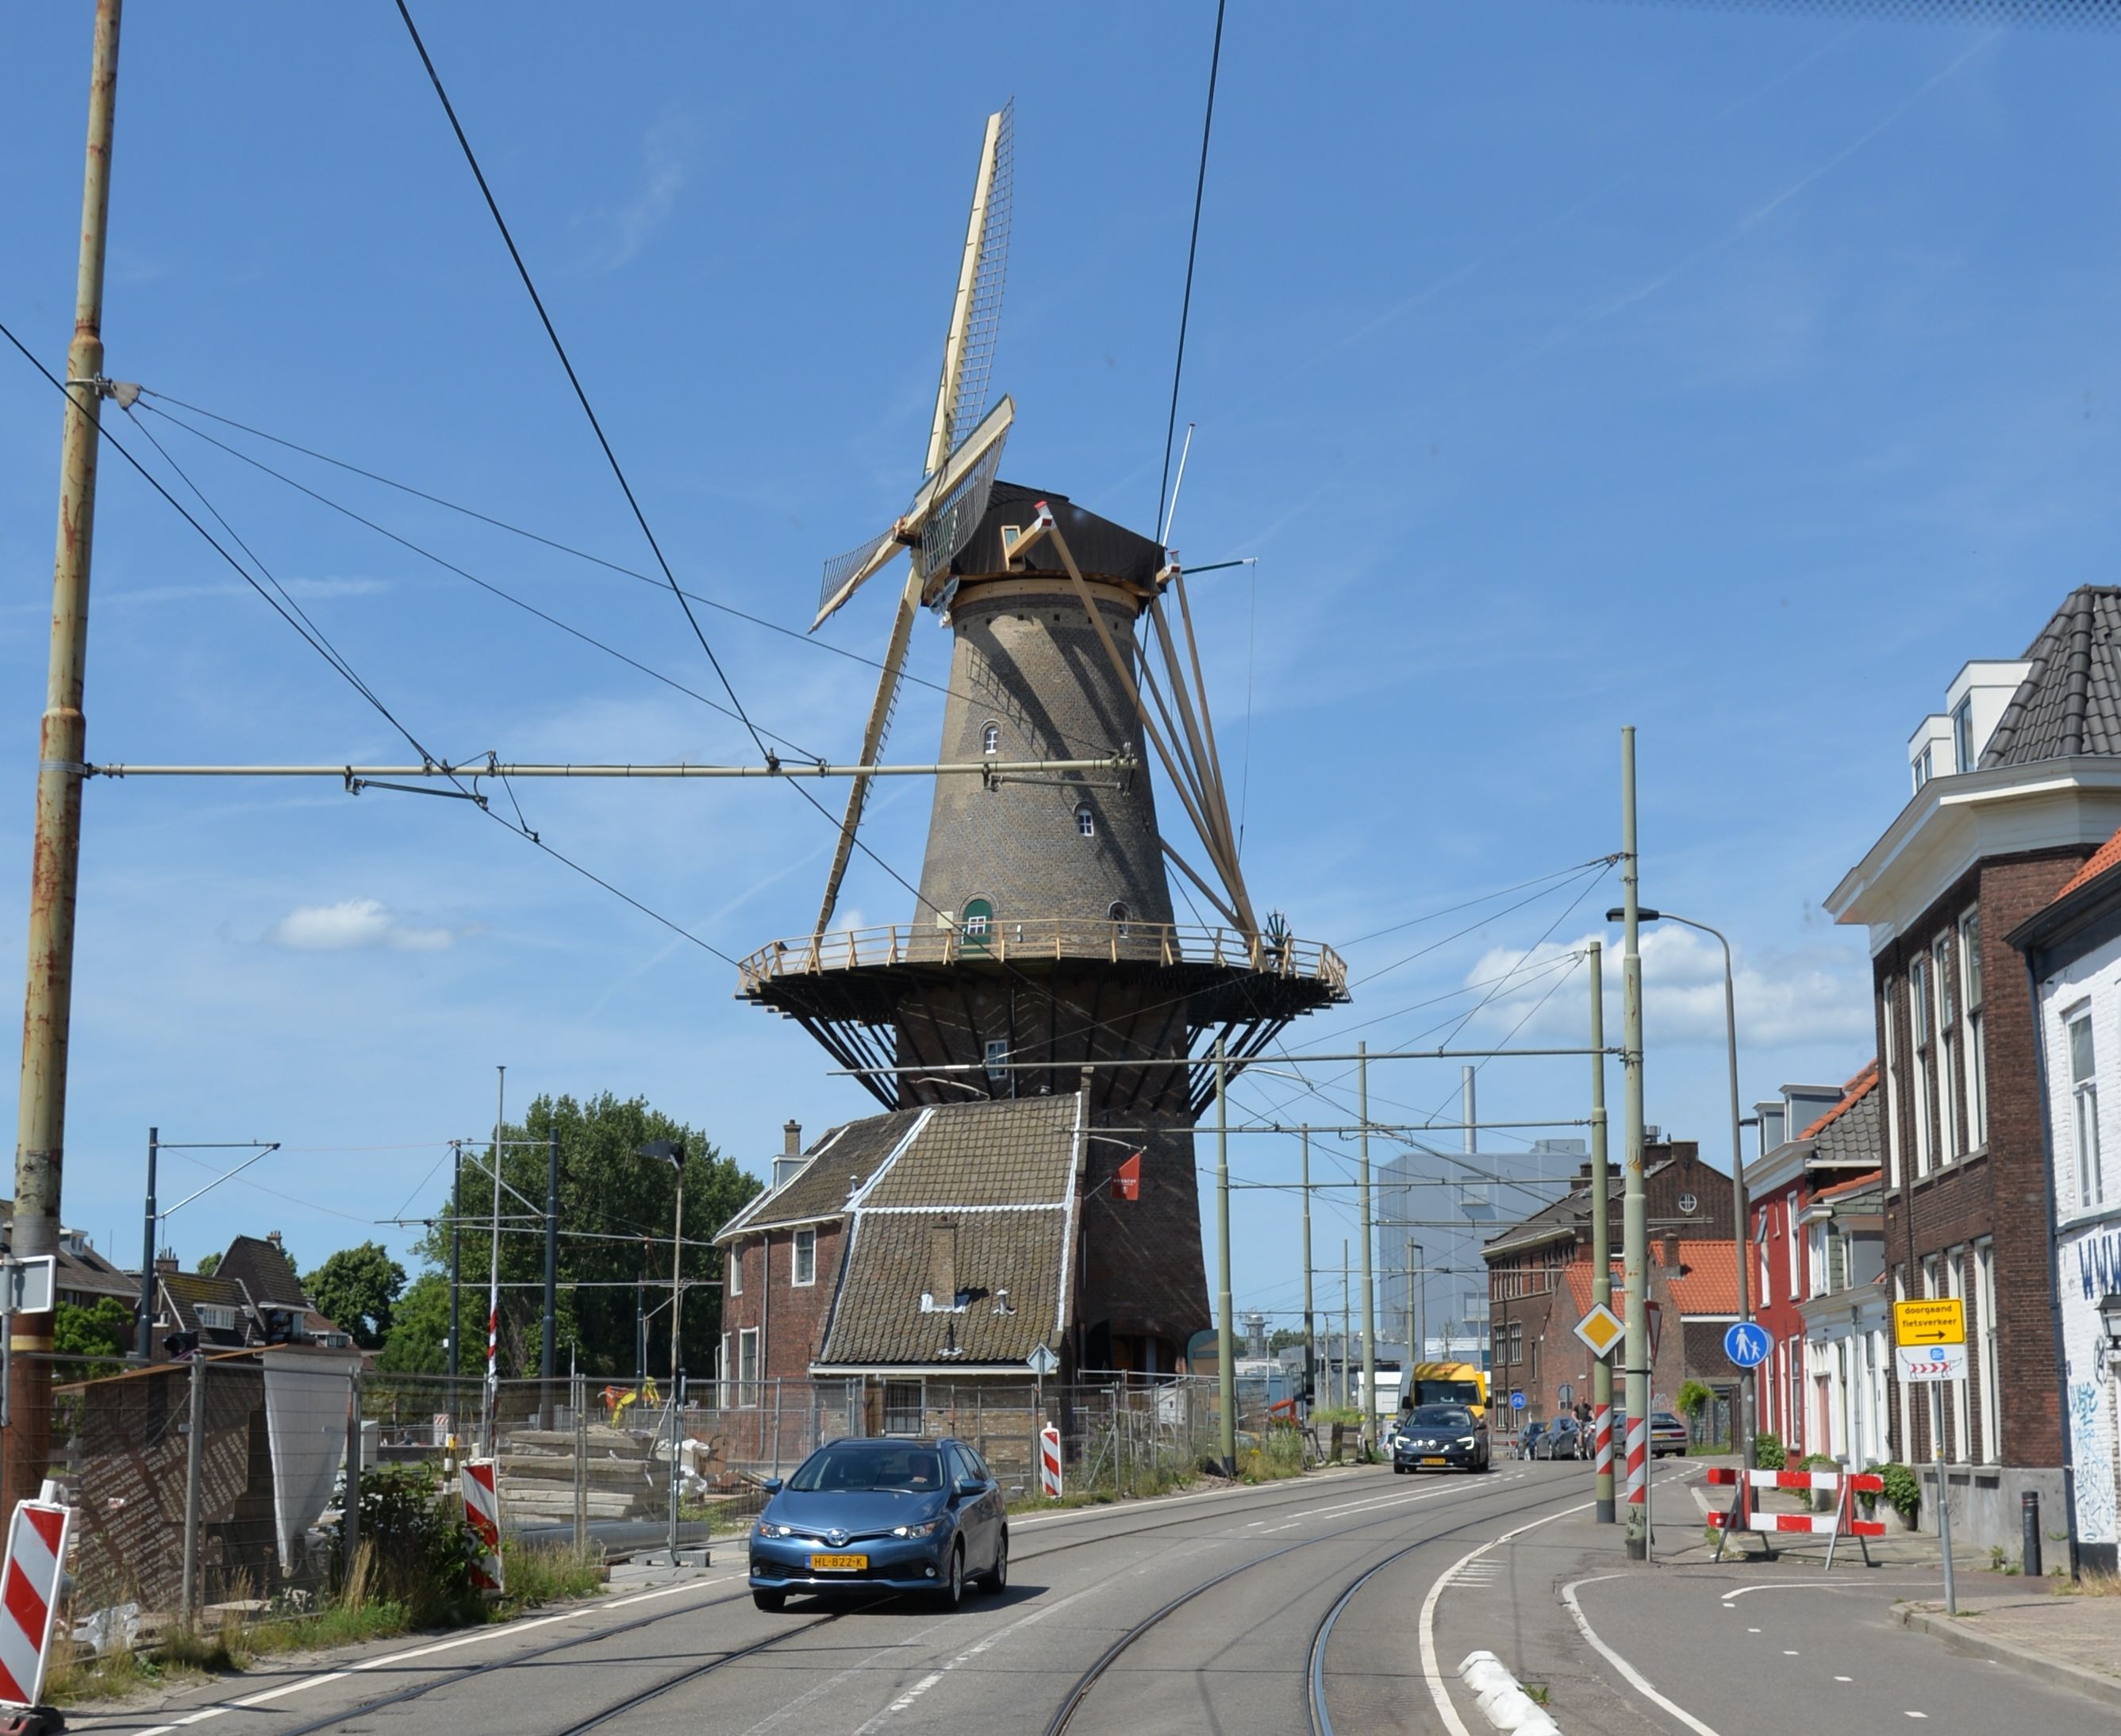 Les moulins à vent de Delft, Pays-Bas